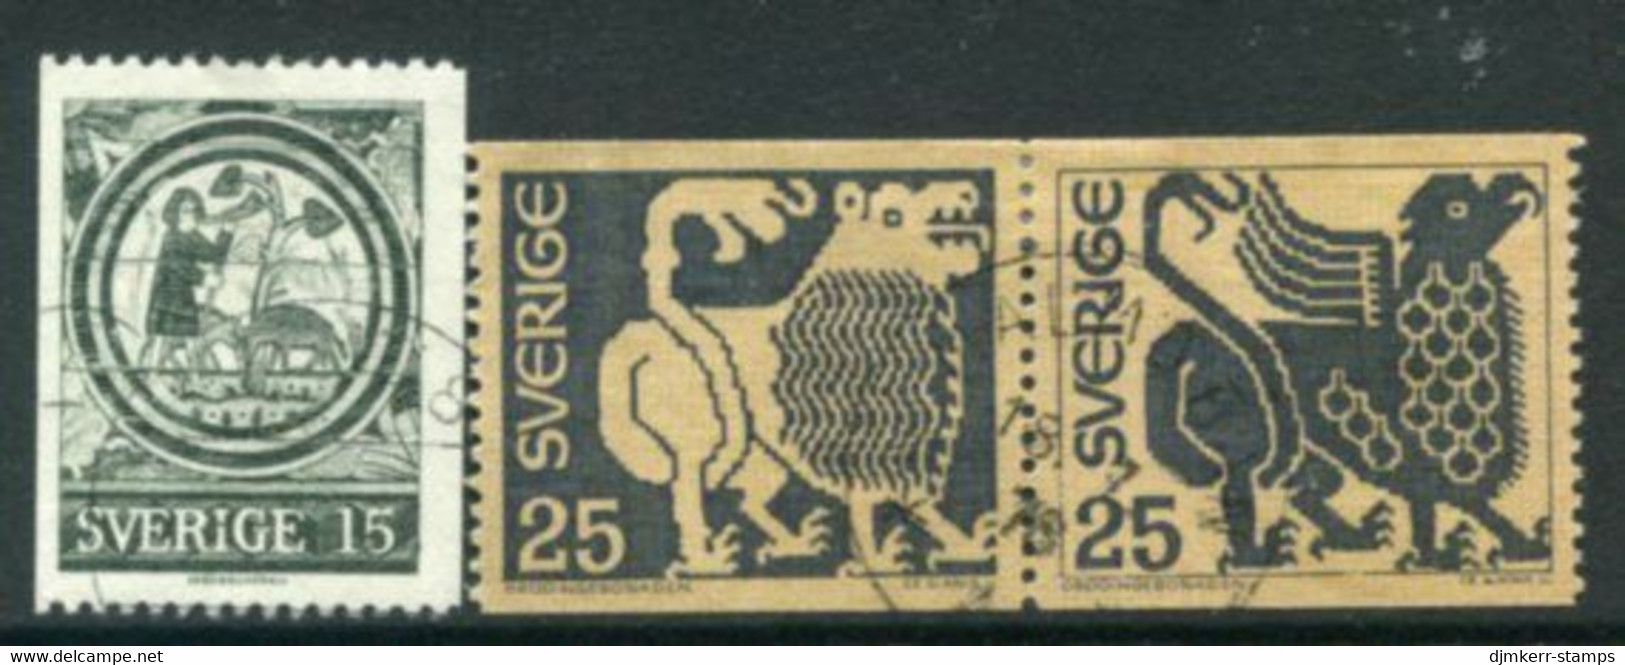 SWEDEN 1971 Definitive: Art Used.  Michel 706-08 - Usados